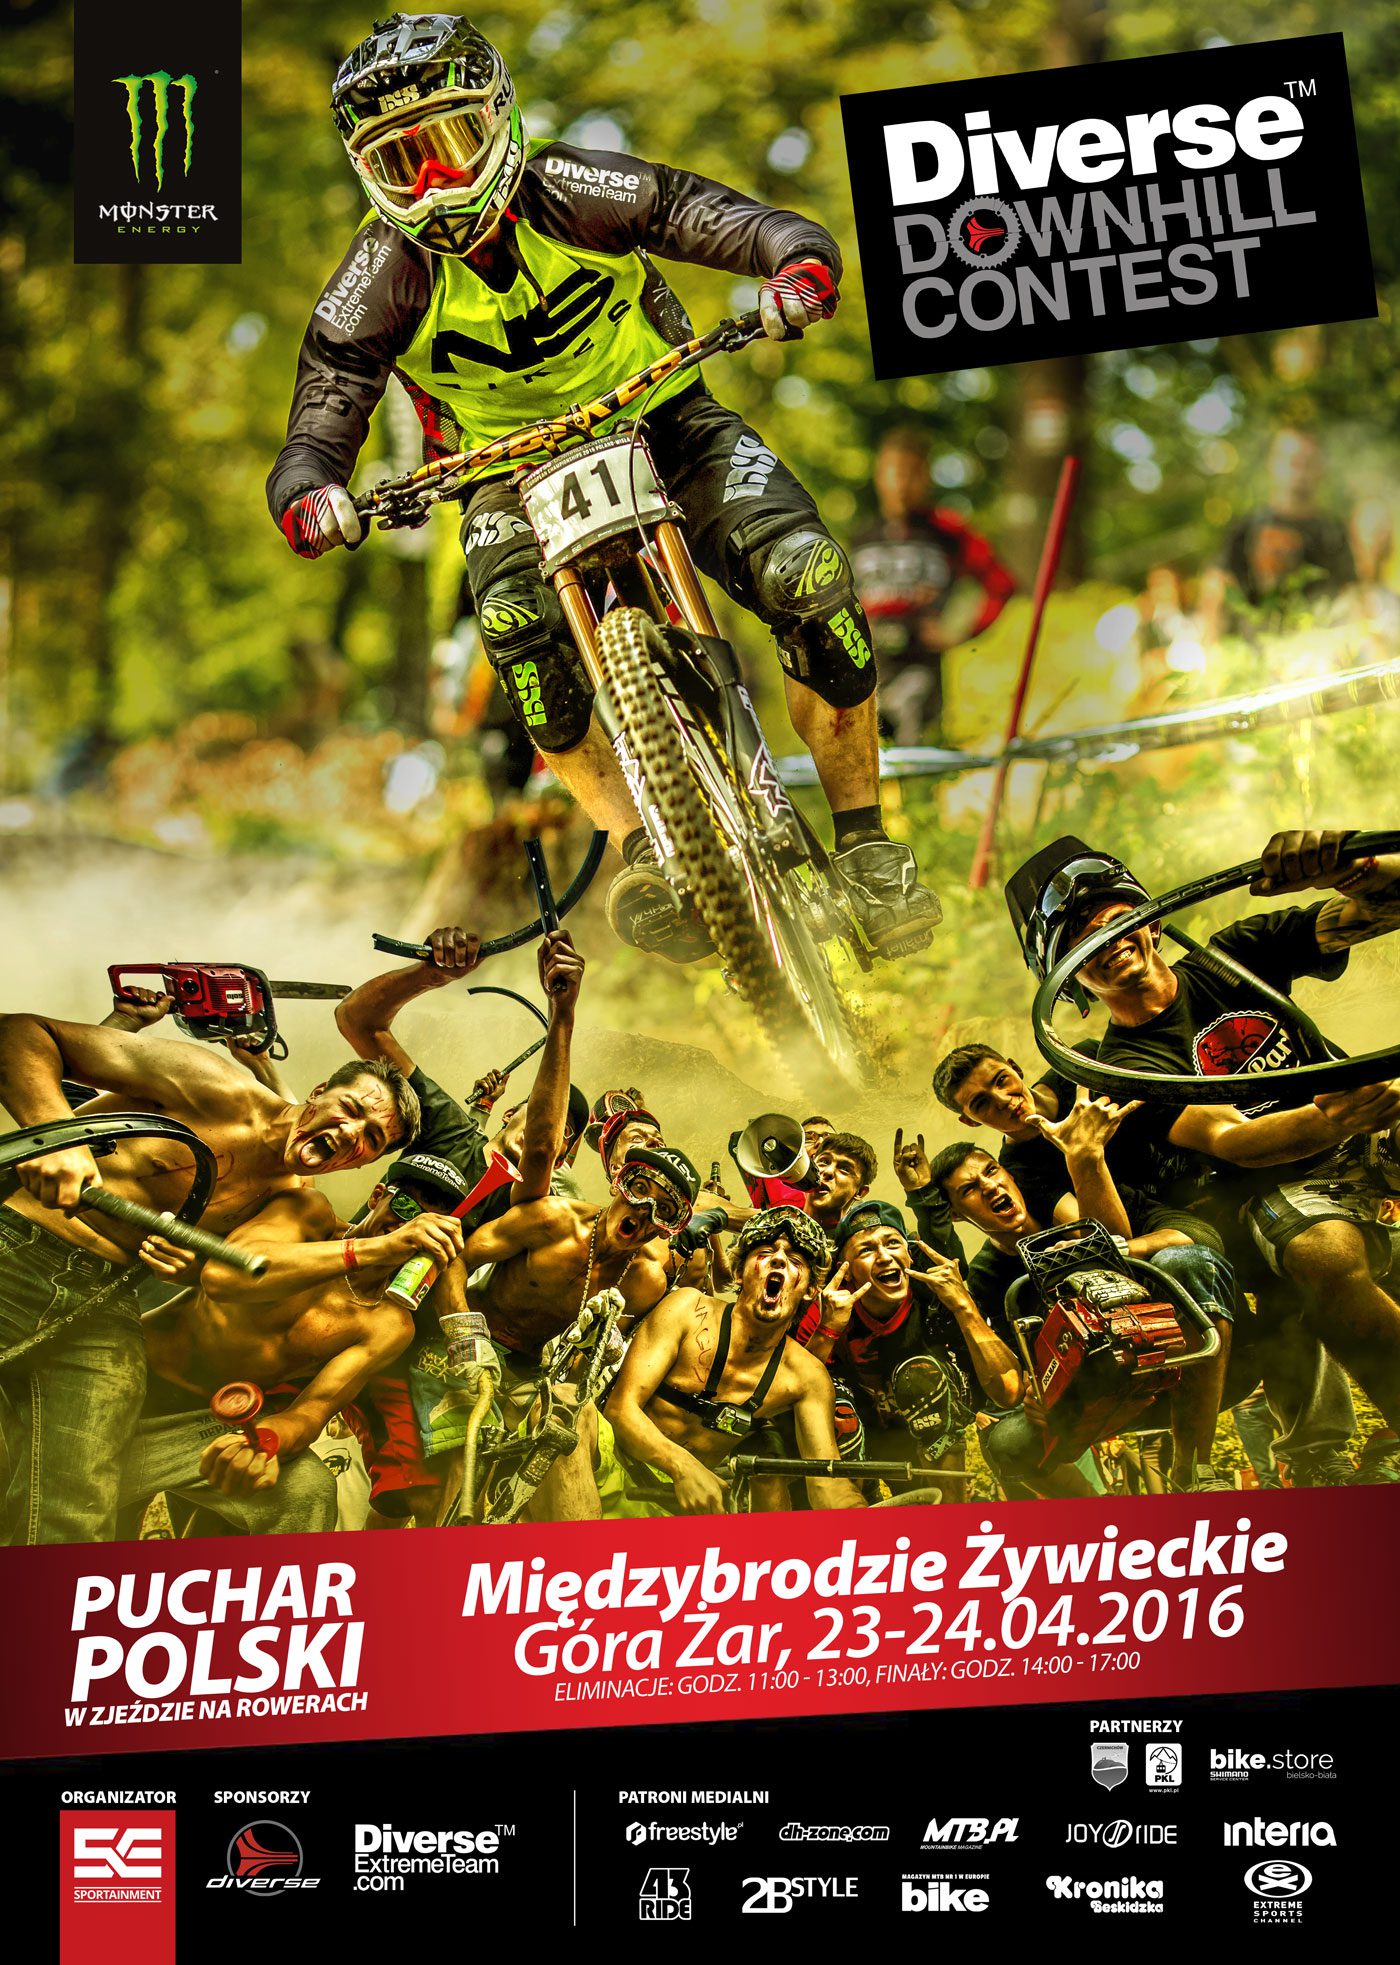 Diverse Downhill Contest: zawodnicy gotowi na pierwsze starcie w Pucharze Polski w tym sezonie